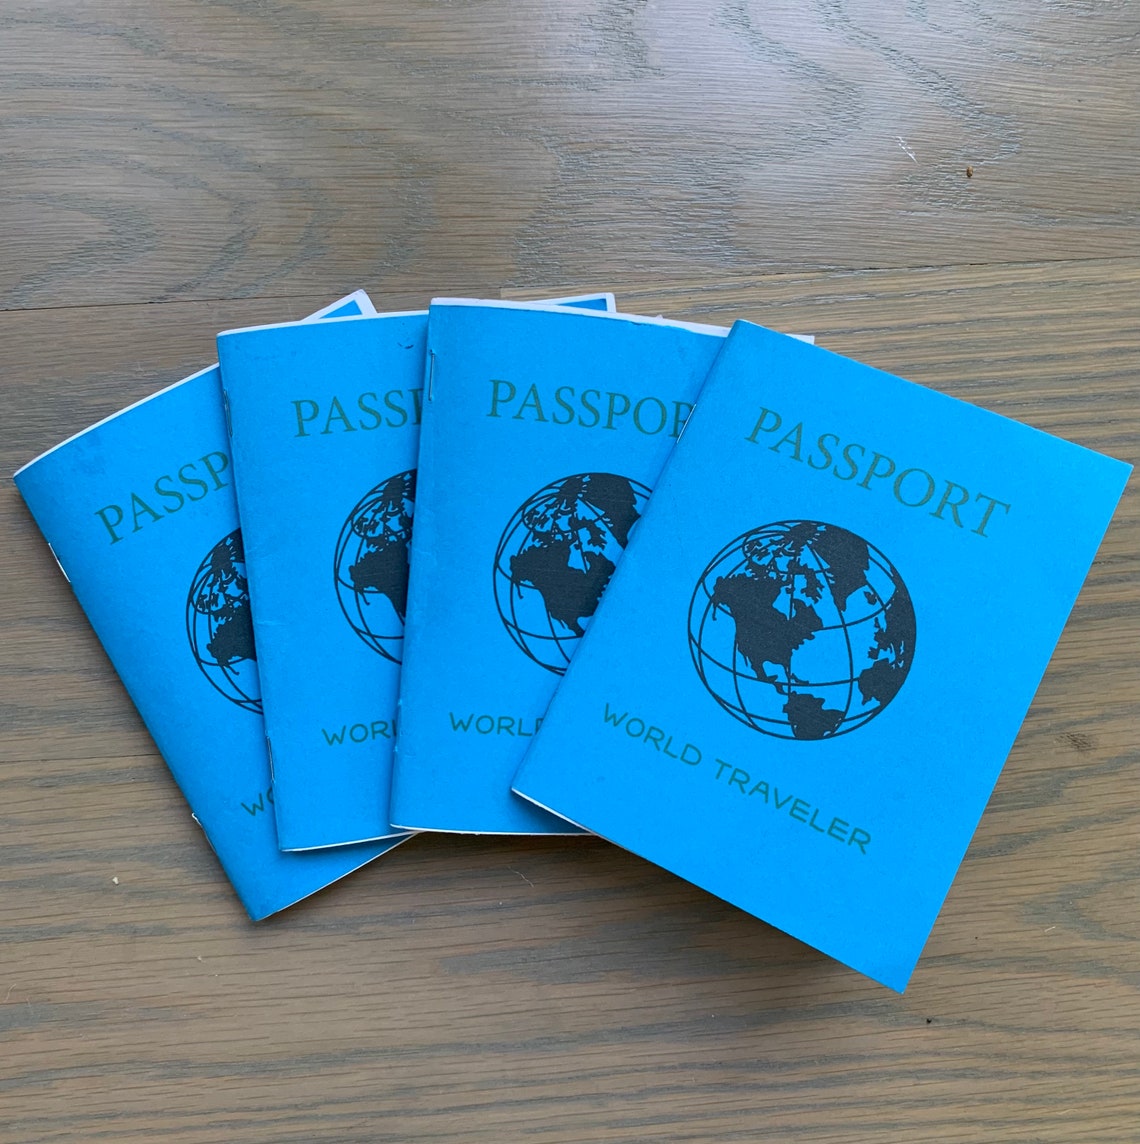 travel passport for child under 16